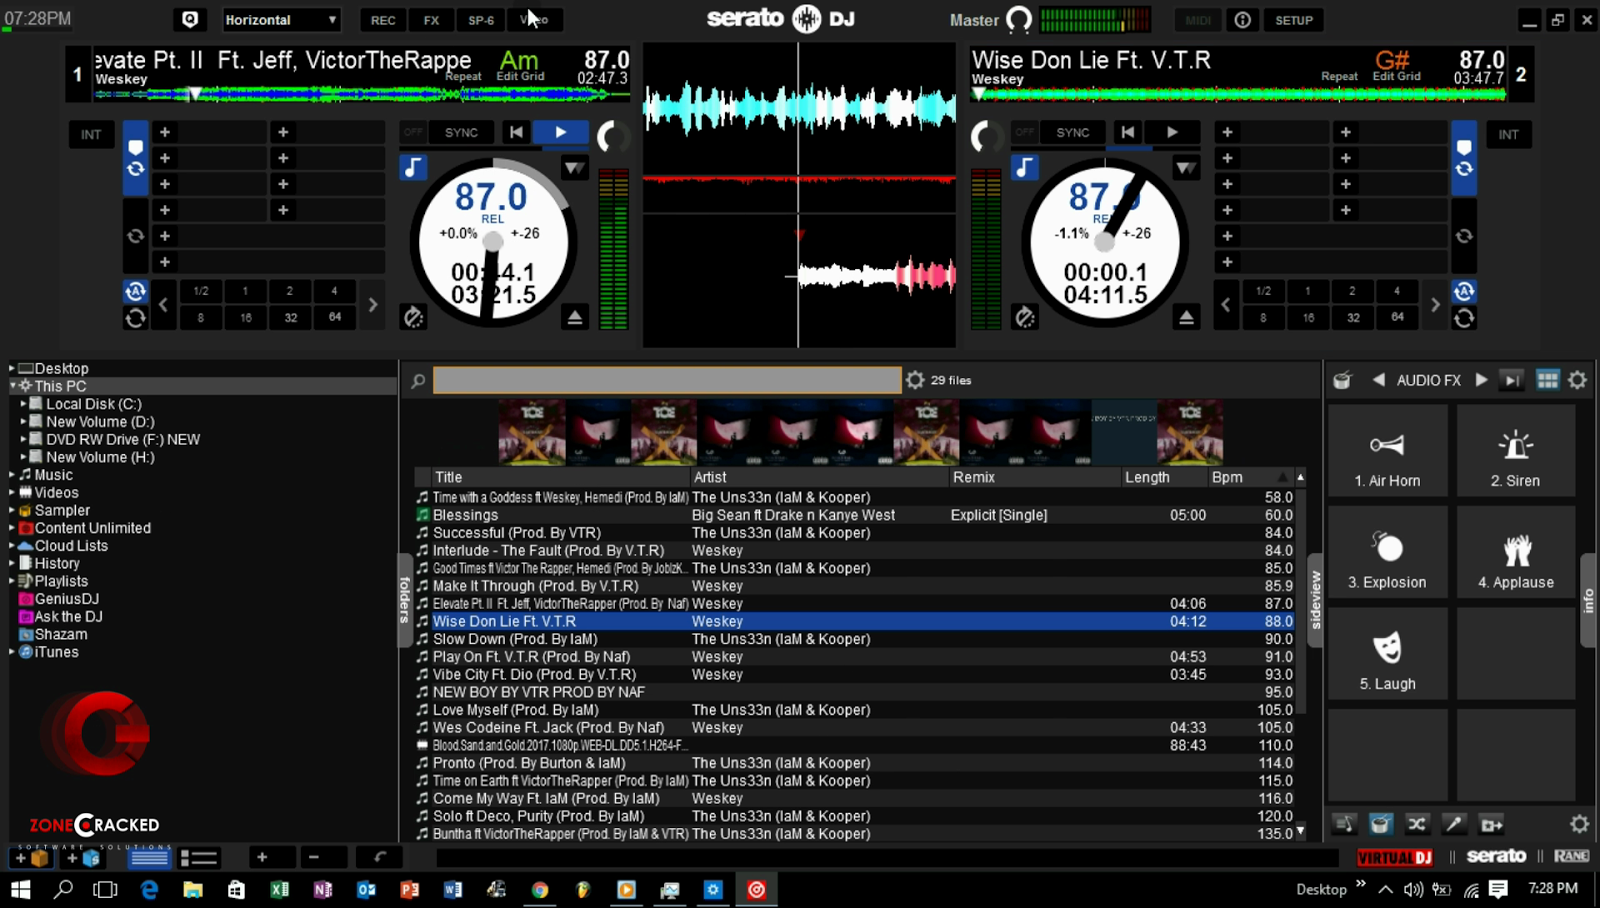 download the new version for windows Serato DJ Pro 3.0.12.266